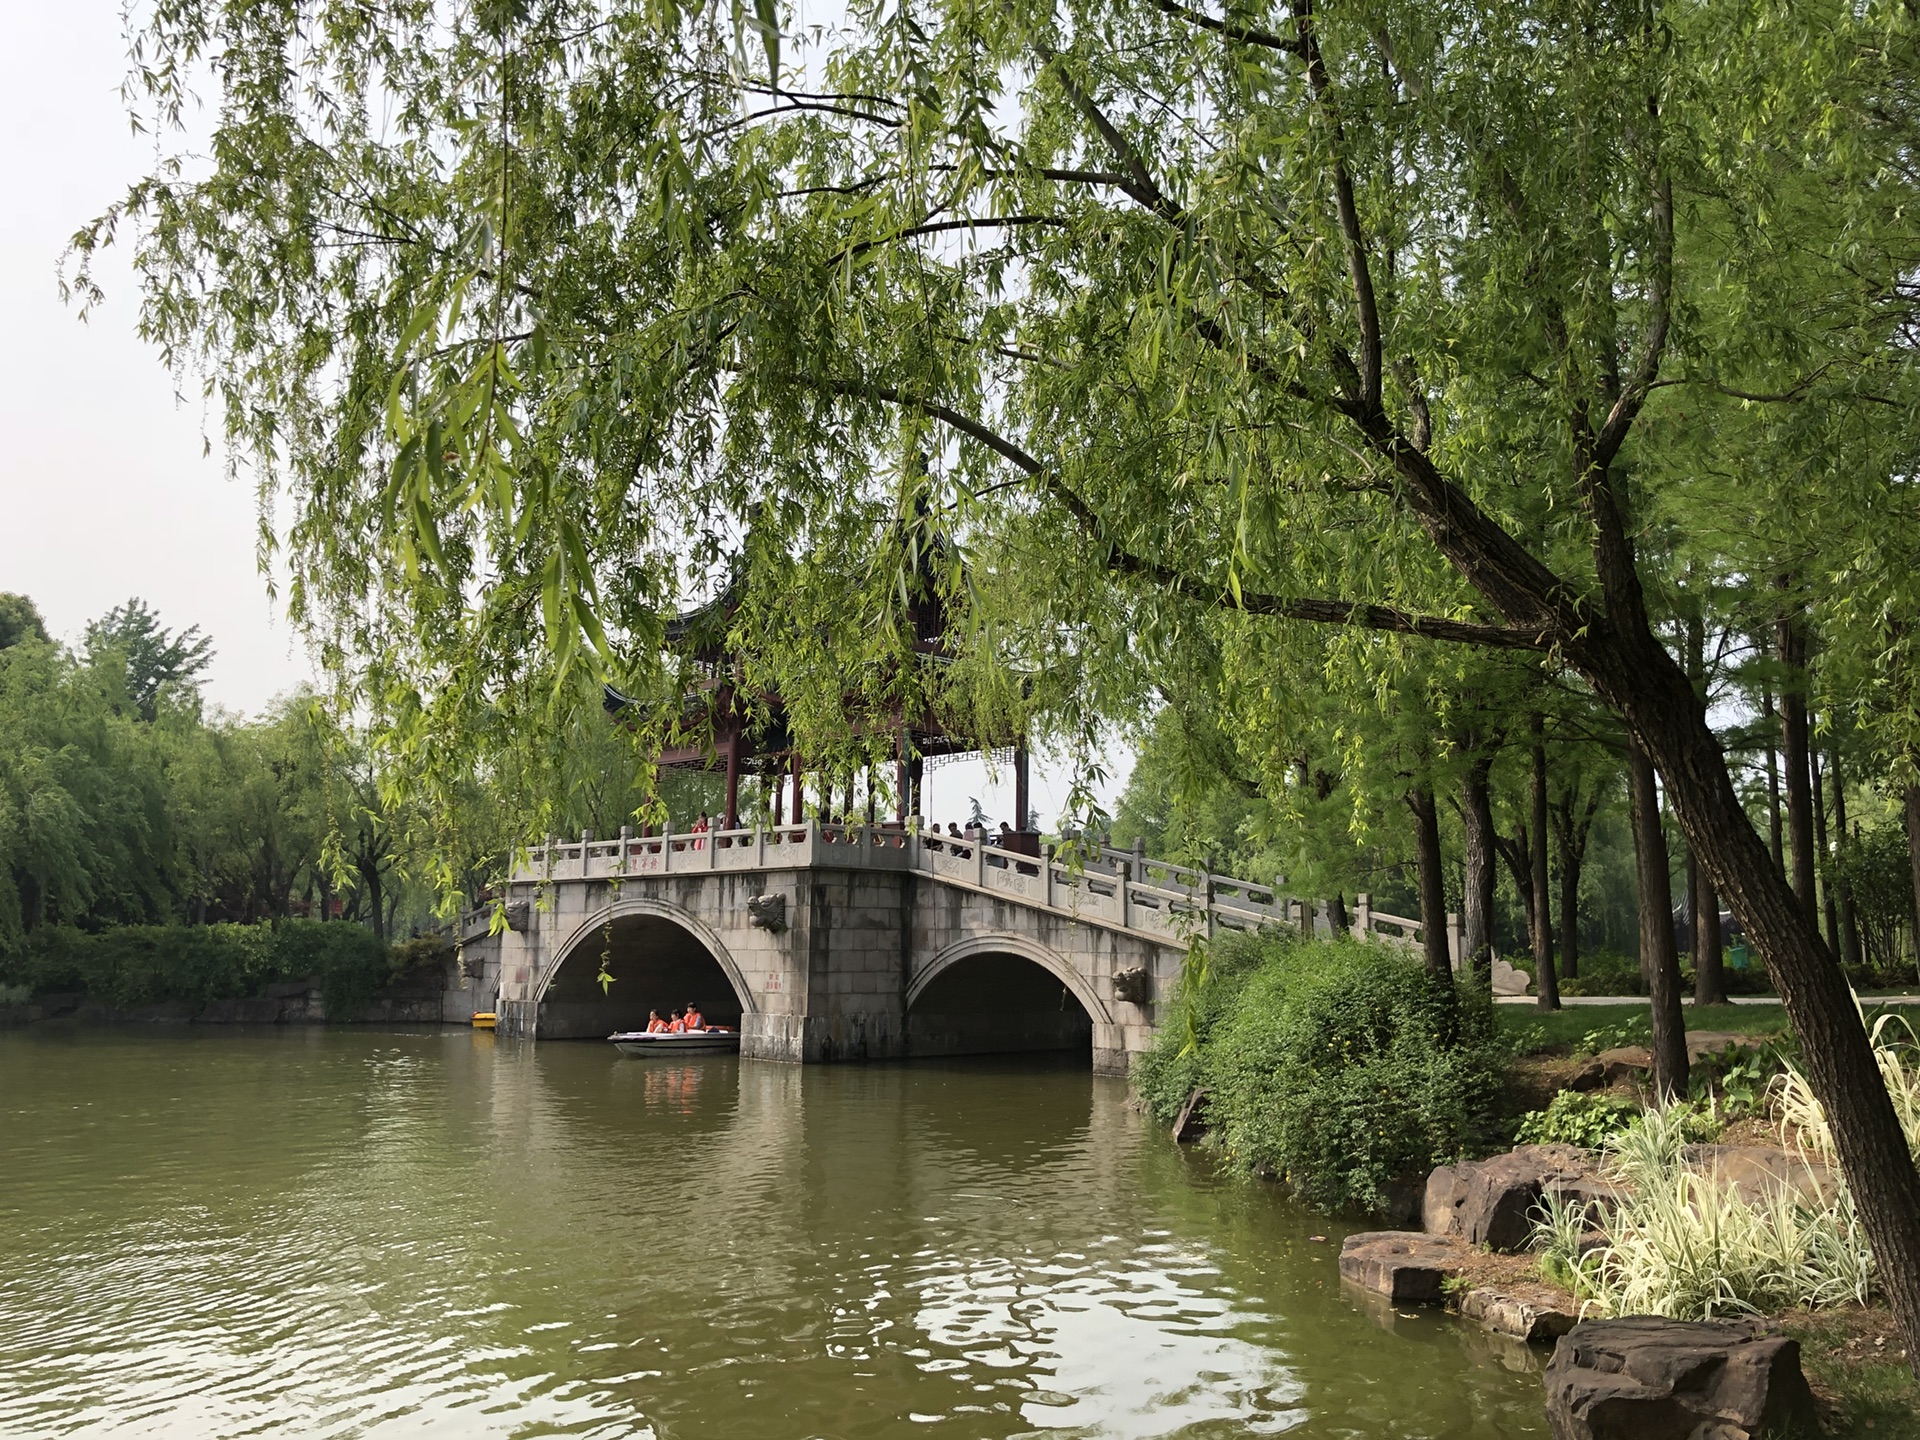 奉贤南桥半日游图片10,上海旅游景点,风景名胜 - 马